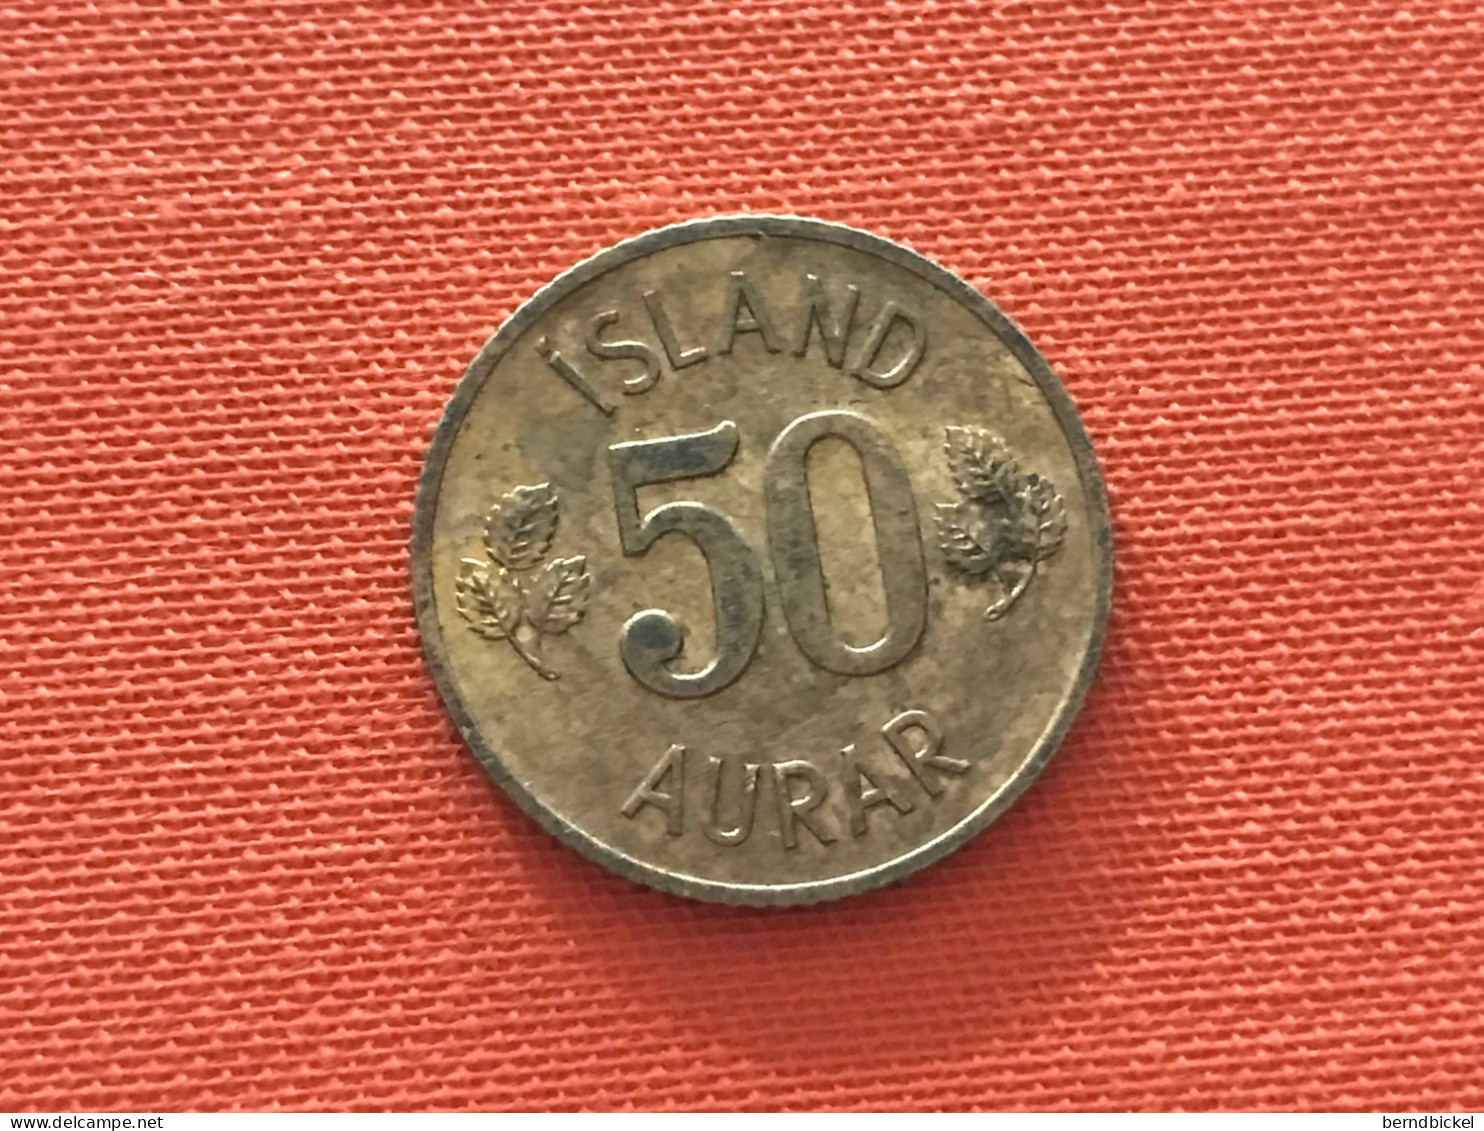 Münze Münzen Umlaufmünze Island 50 Aurar 1971 - Iceland